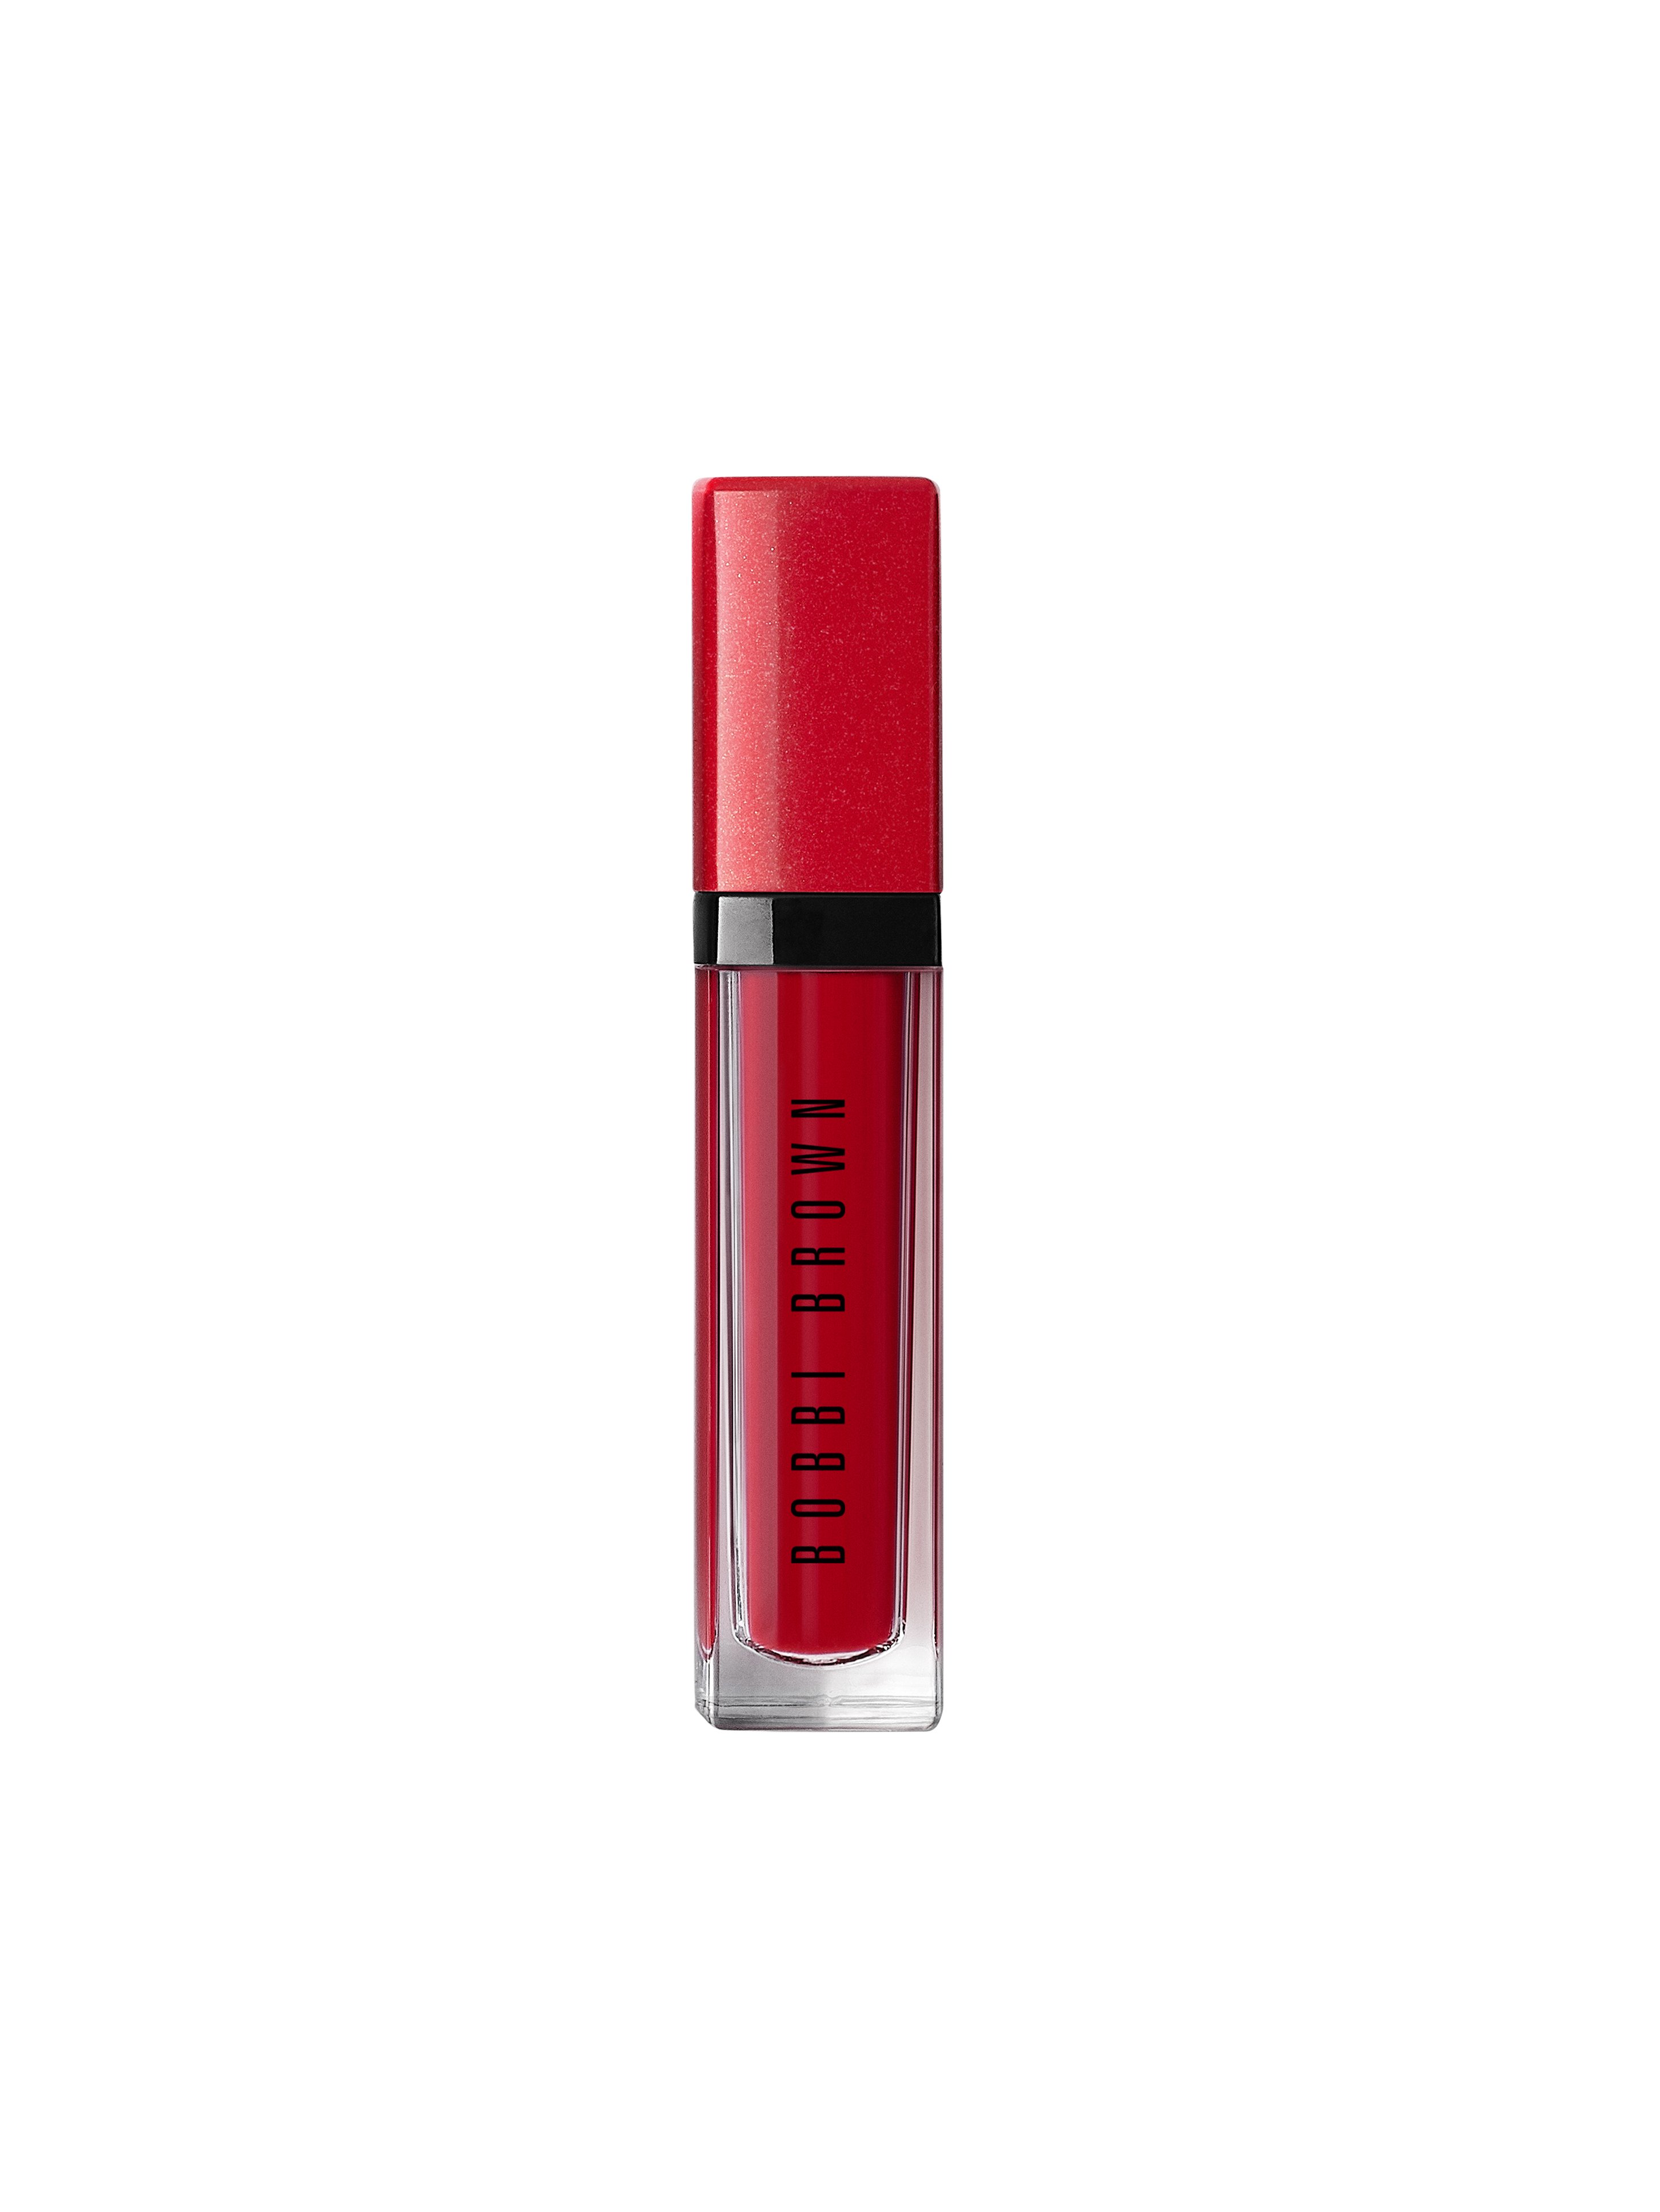 ماركة التجميل والعناية بوبي براون تُطلق سلسلة احمر شفاه جديدة : Crushed Liquid Lip-2